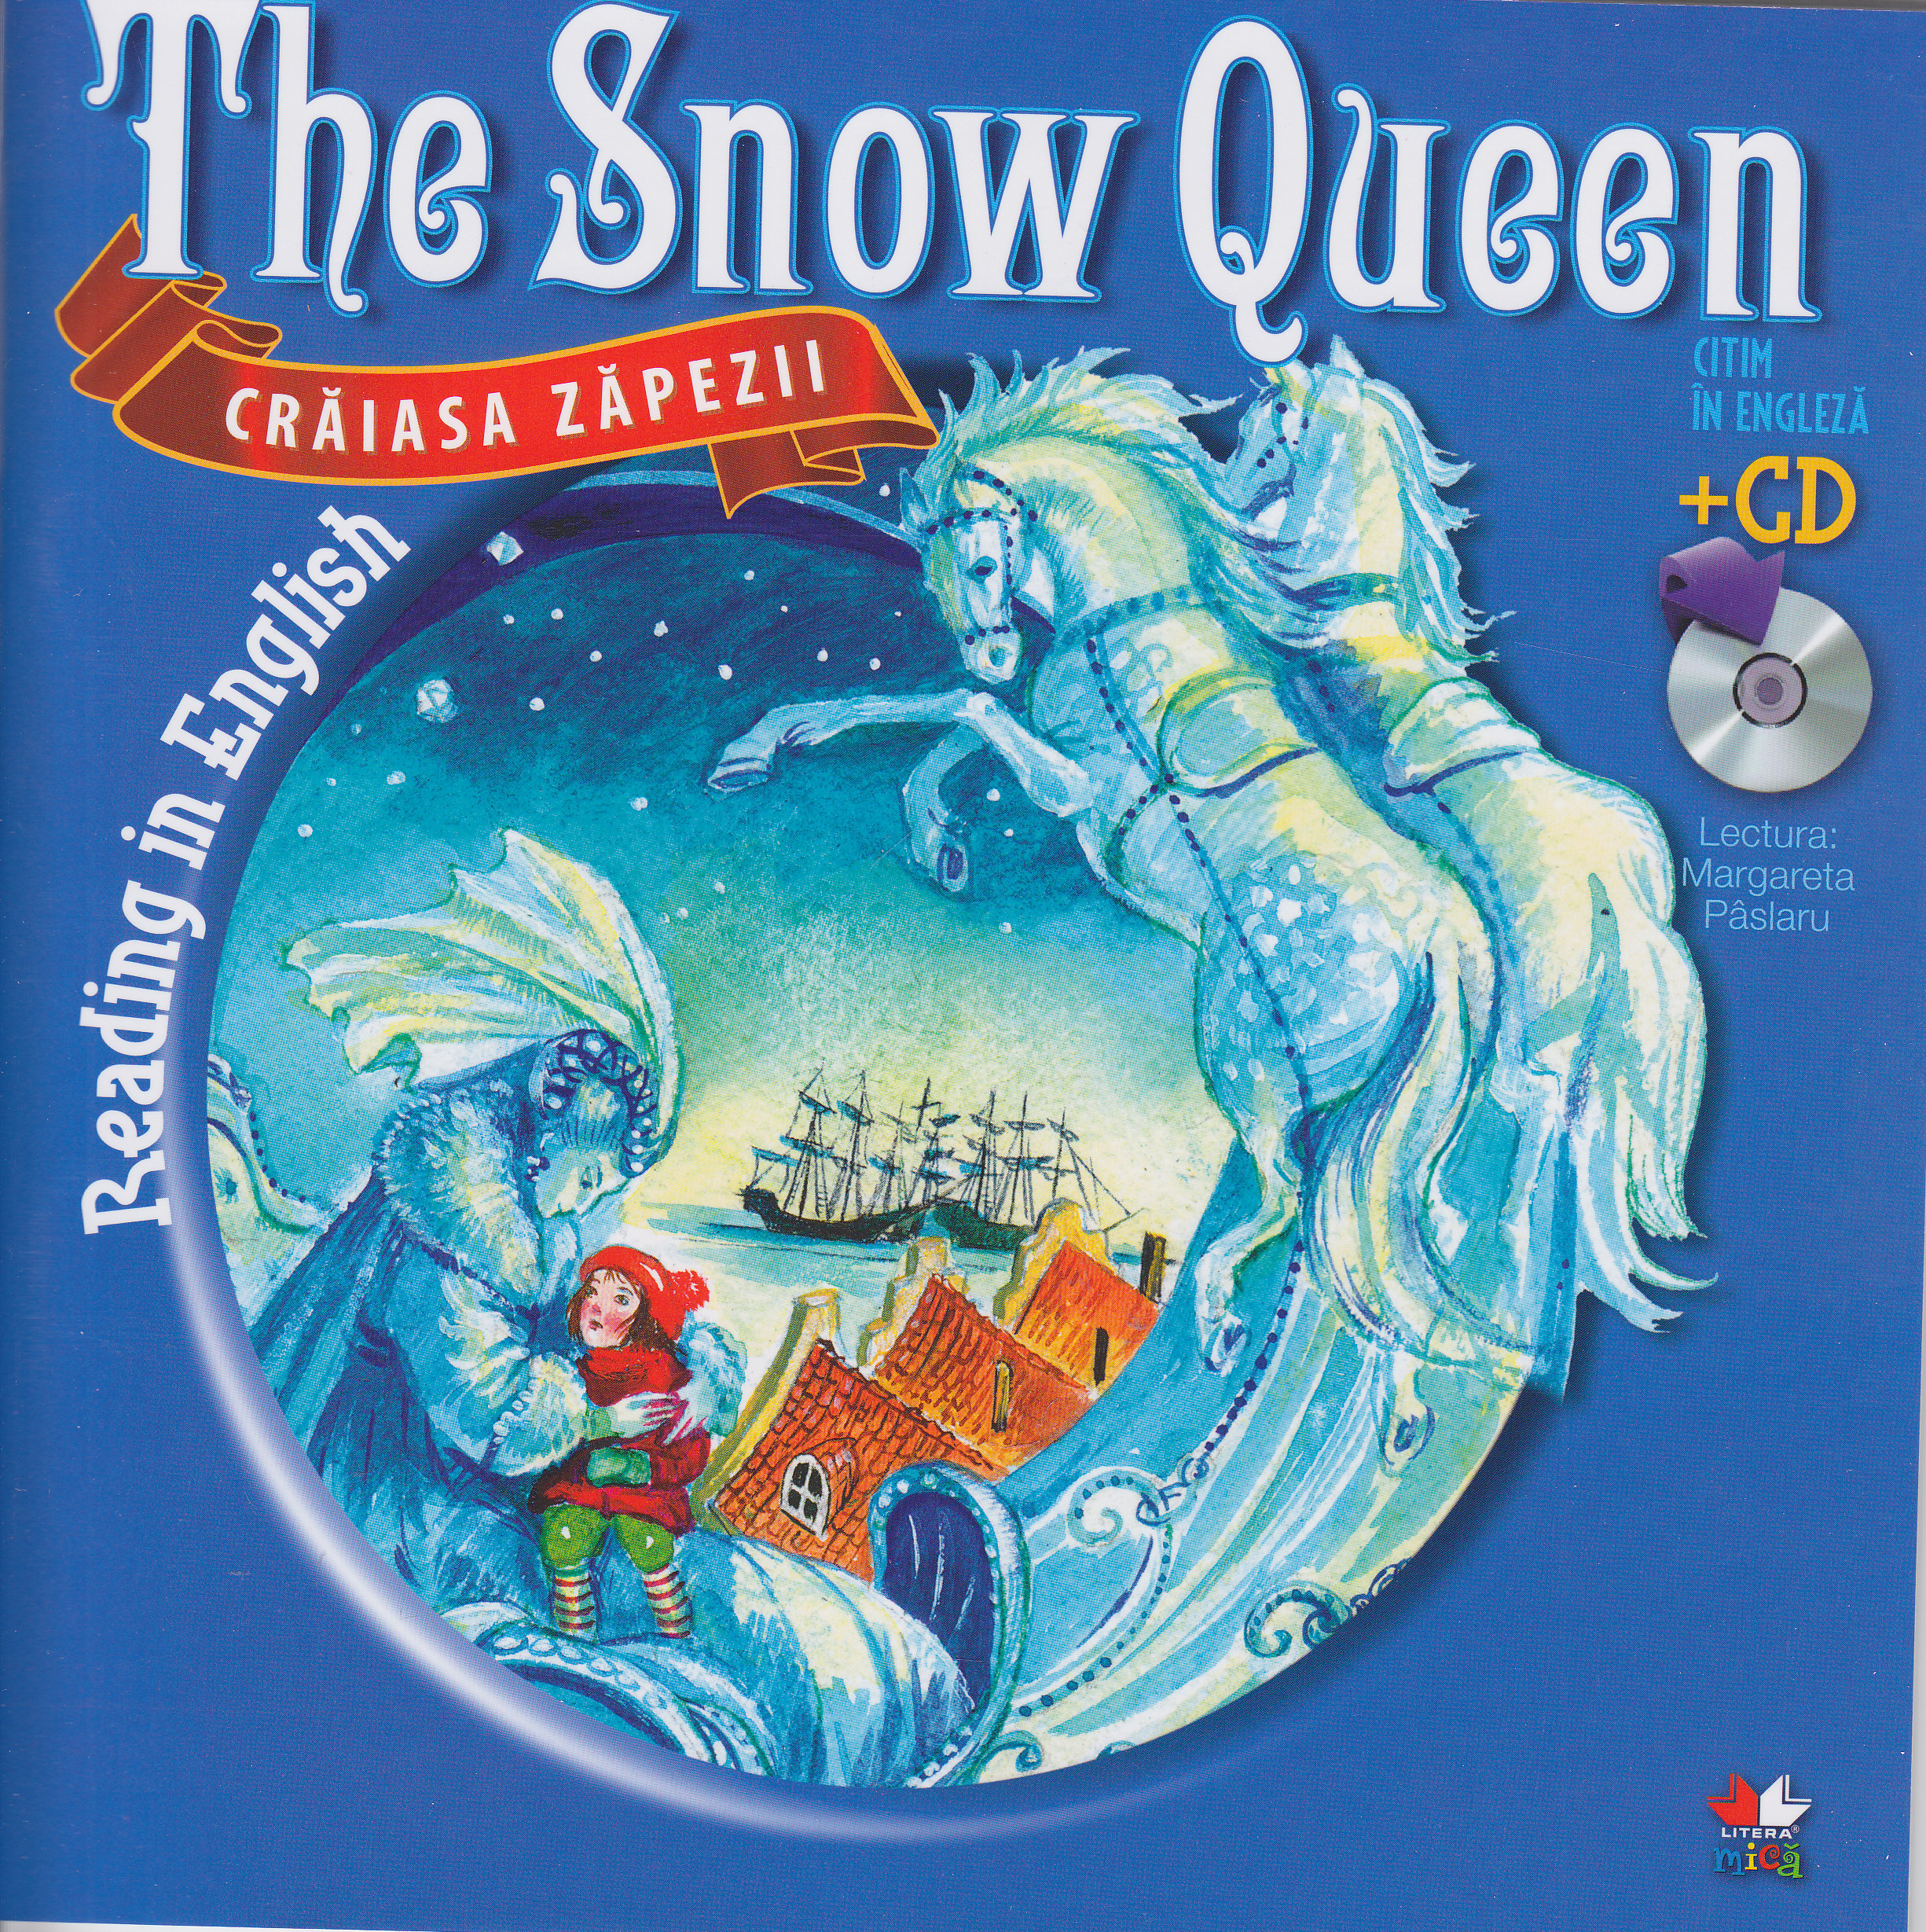 Craiasa zapezii. The snow queen. Reading in english + Cd. lectura: Margareta Paslaru